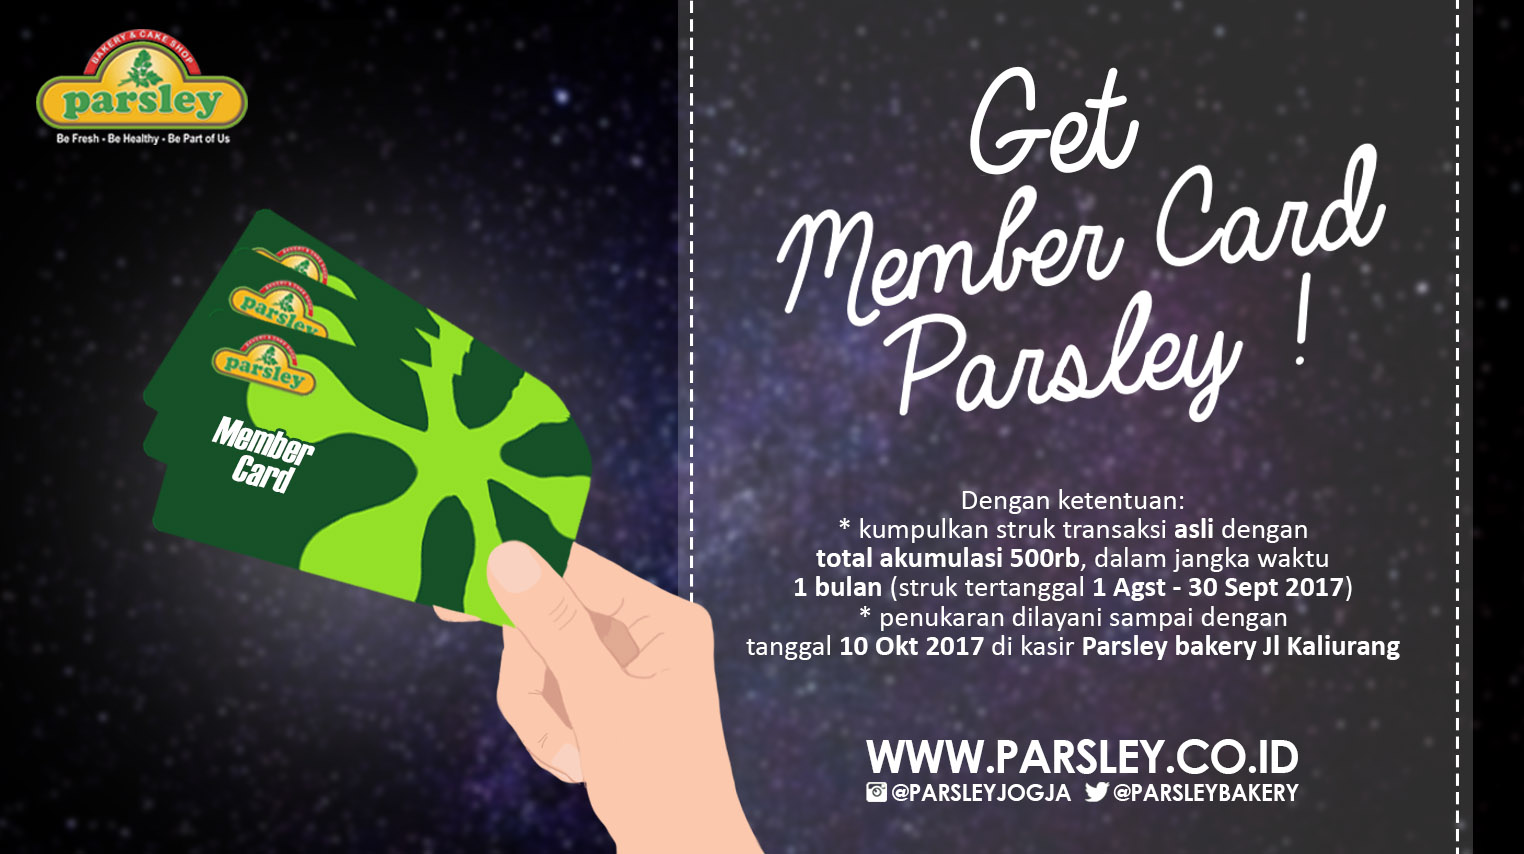 Get Member Card Parsley